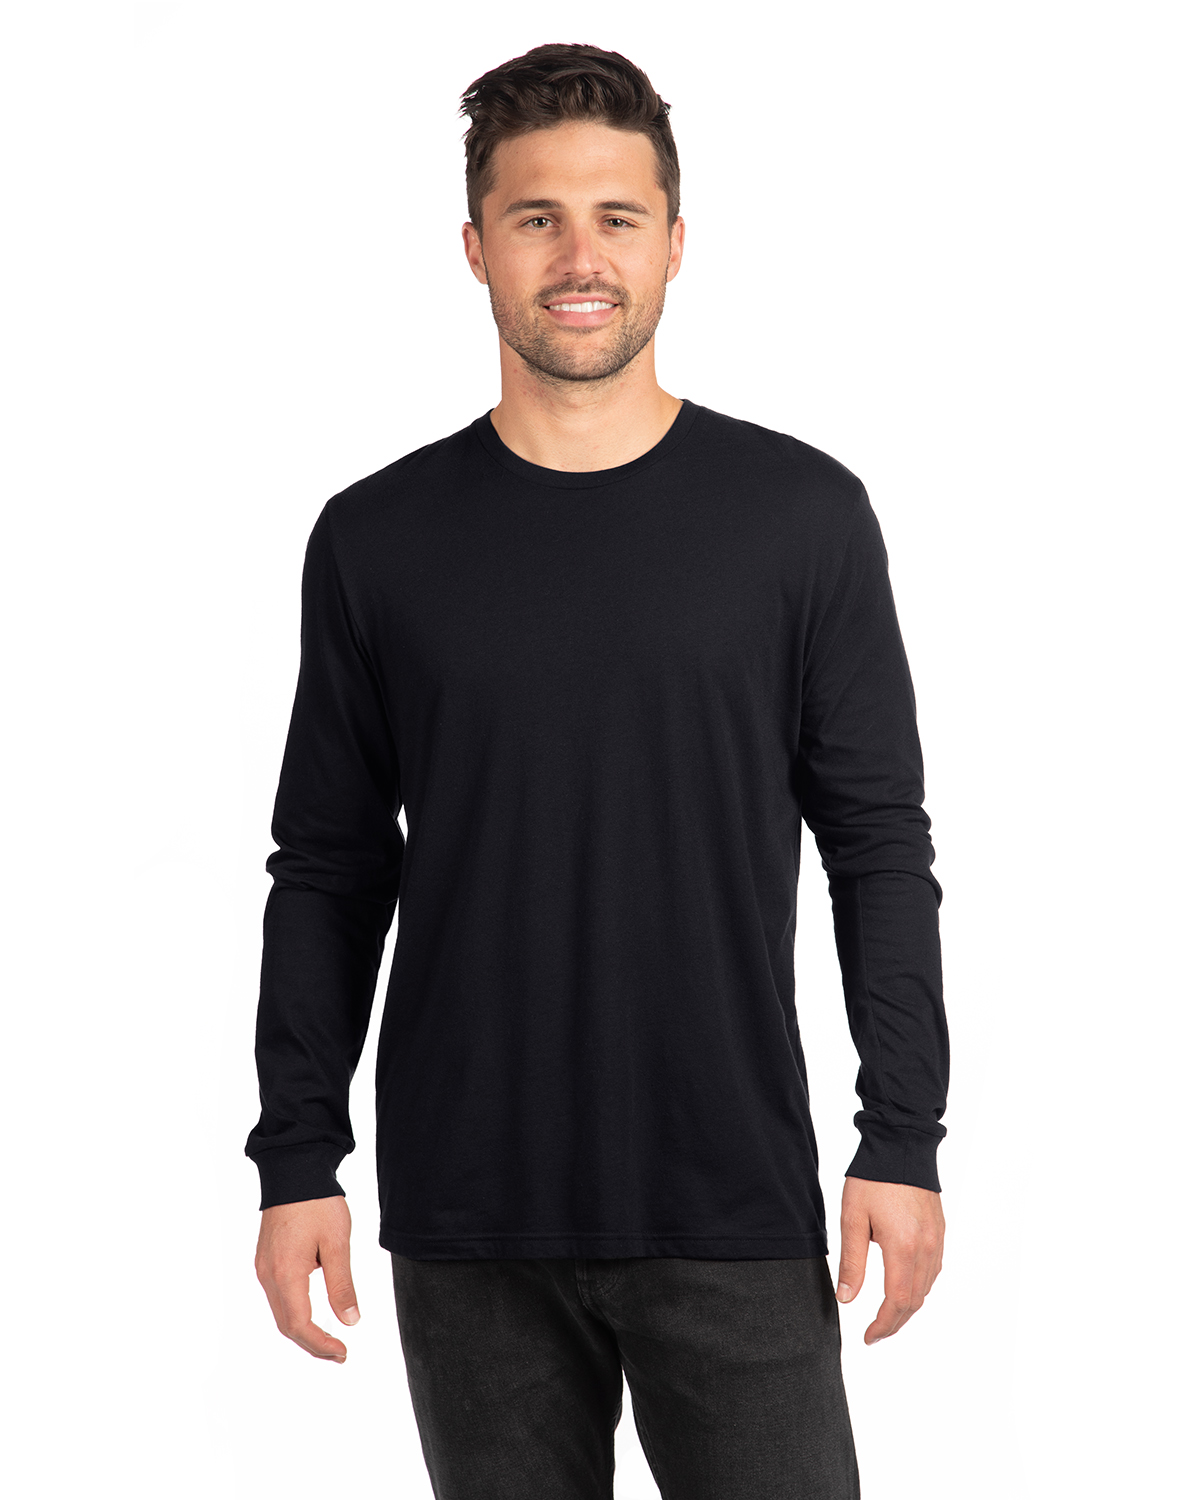 Next Level 6211 Nl Adult Cvc Long Sleeve T Shirt | Jiffy Shirts | V-Shirts